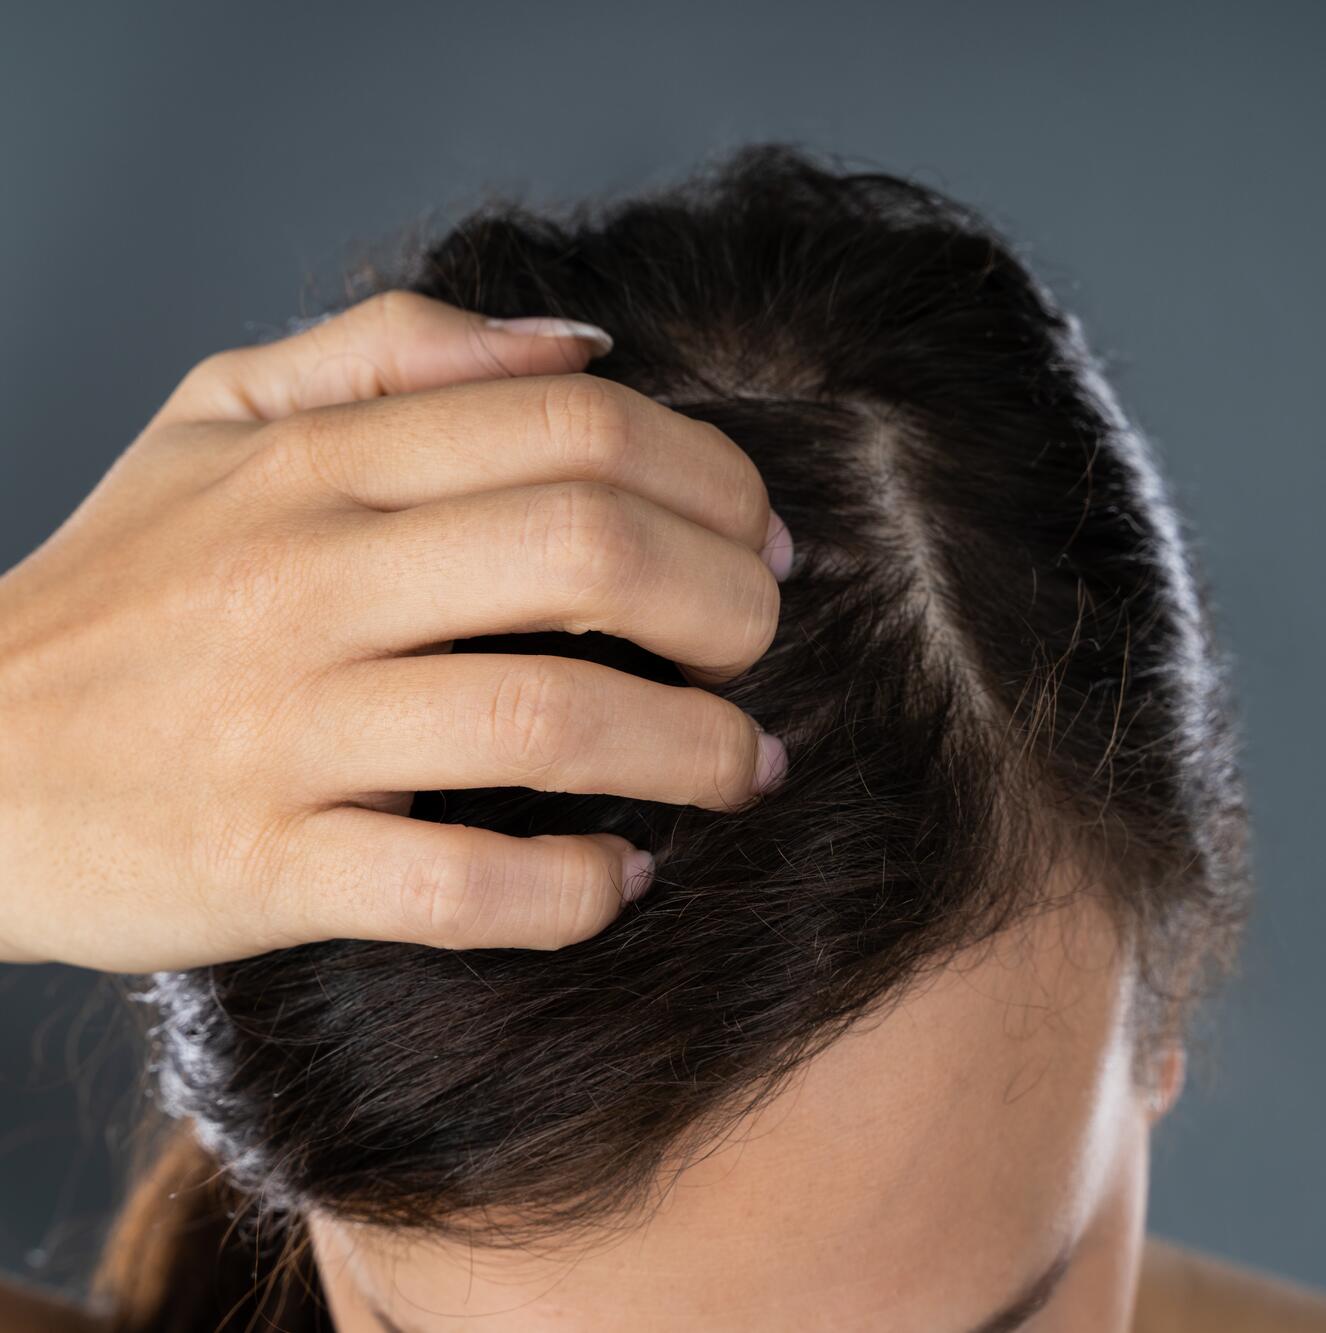 Linderung der Neurodermitis (atopischen Dermatitis) auf der Kopfhaut